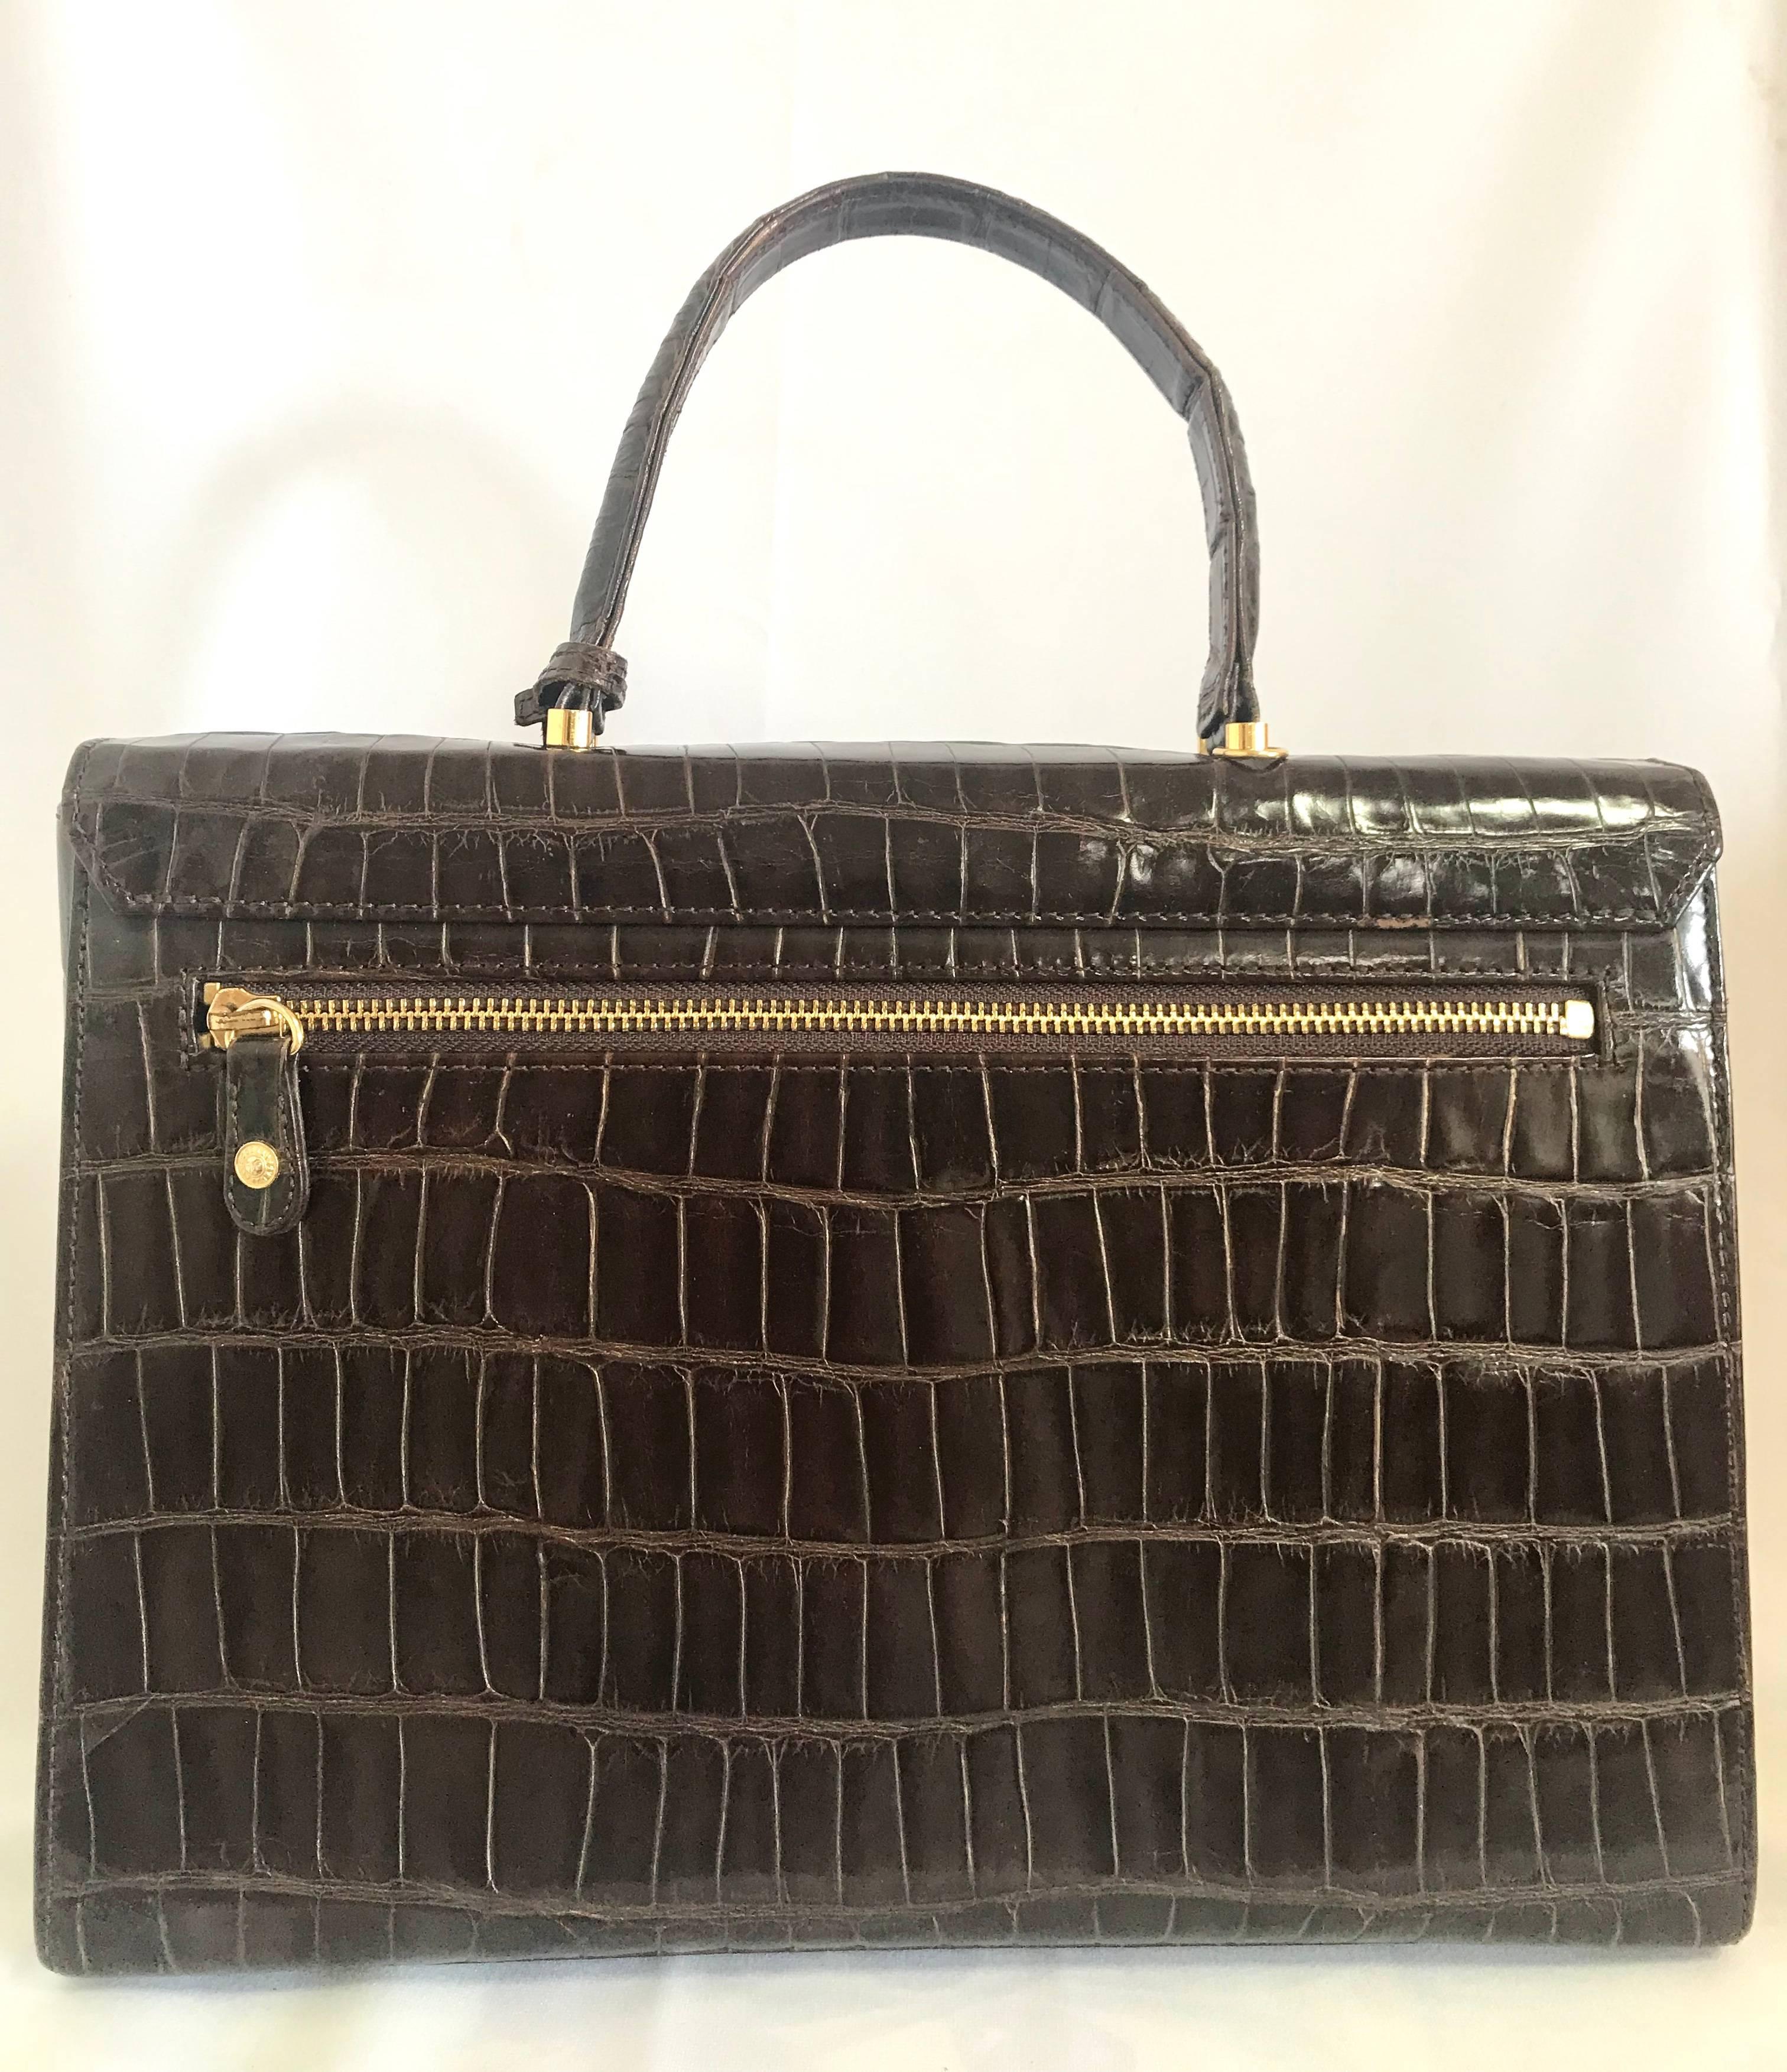 Vintage Gianni Versace dark brown croc embossed leather Kelly style bag. 2